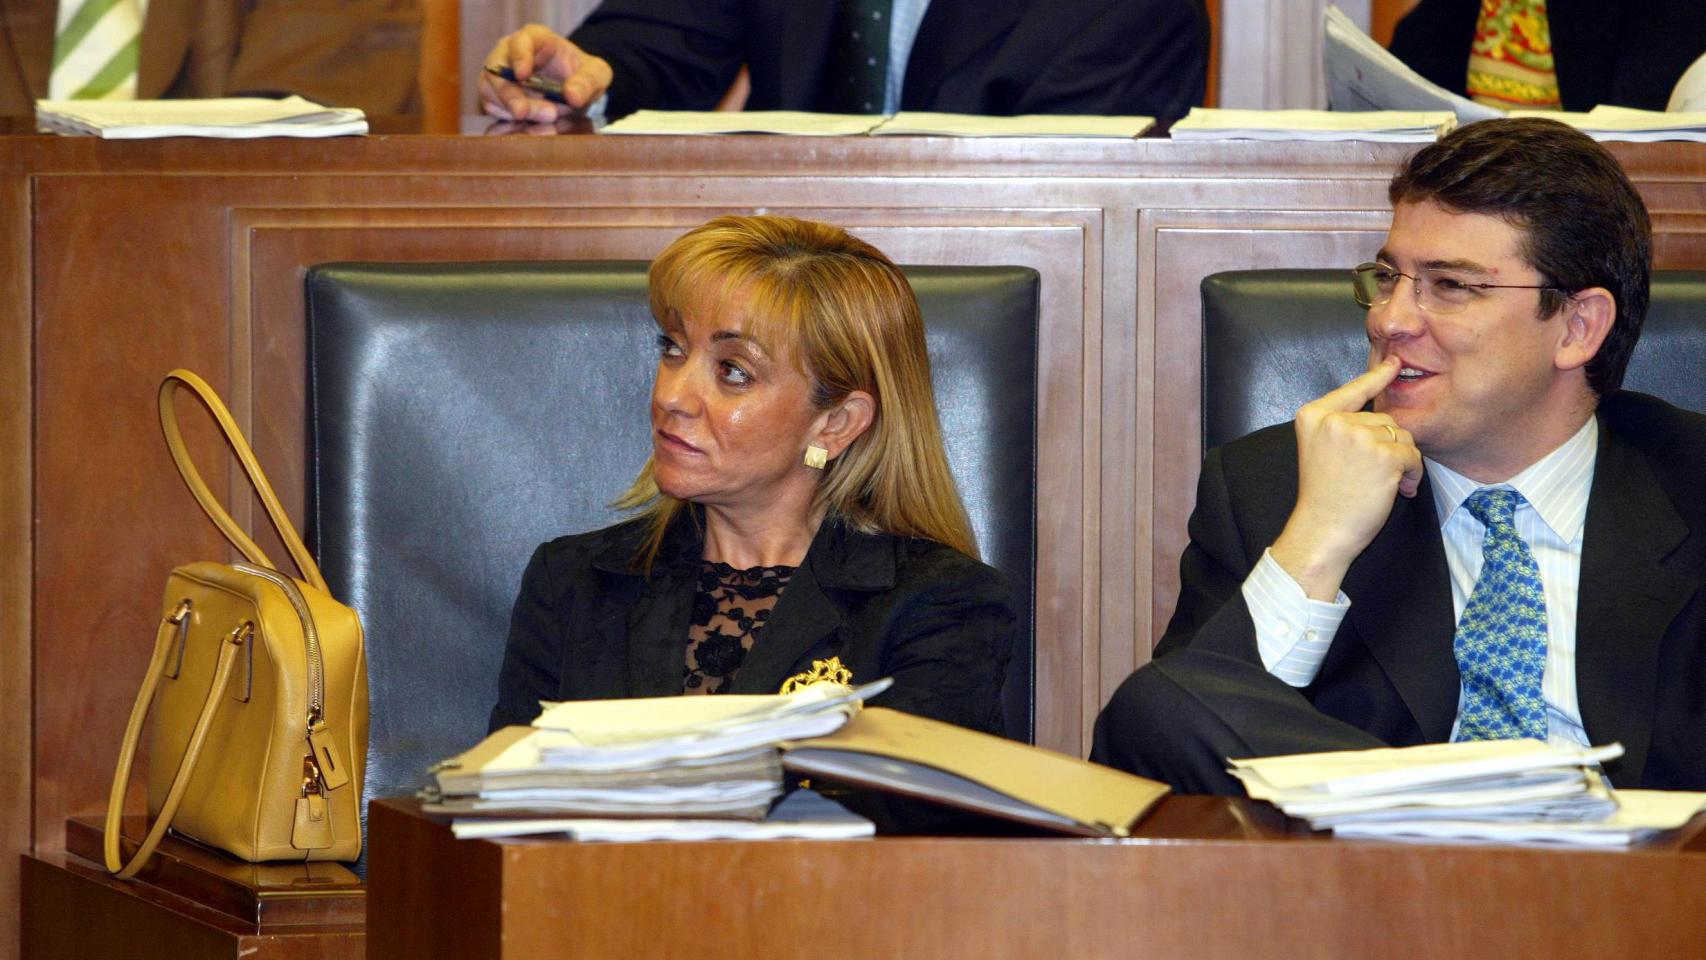 Isabel Carrasco y Fernández Mañueco, en una imagen de archivo de 2003 en las Cortes cuando ambos eran consejeros de la Junta